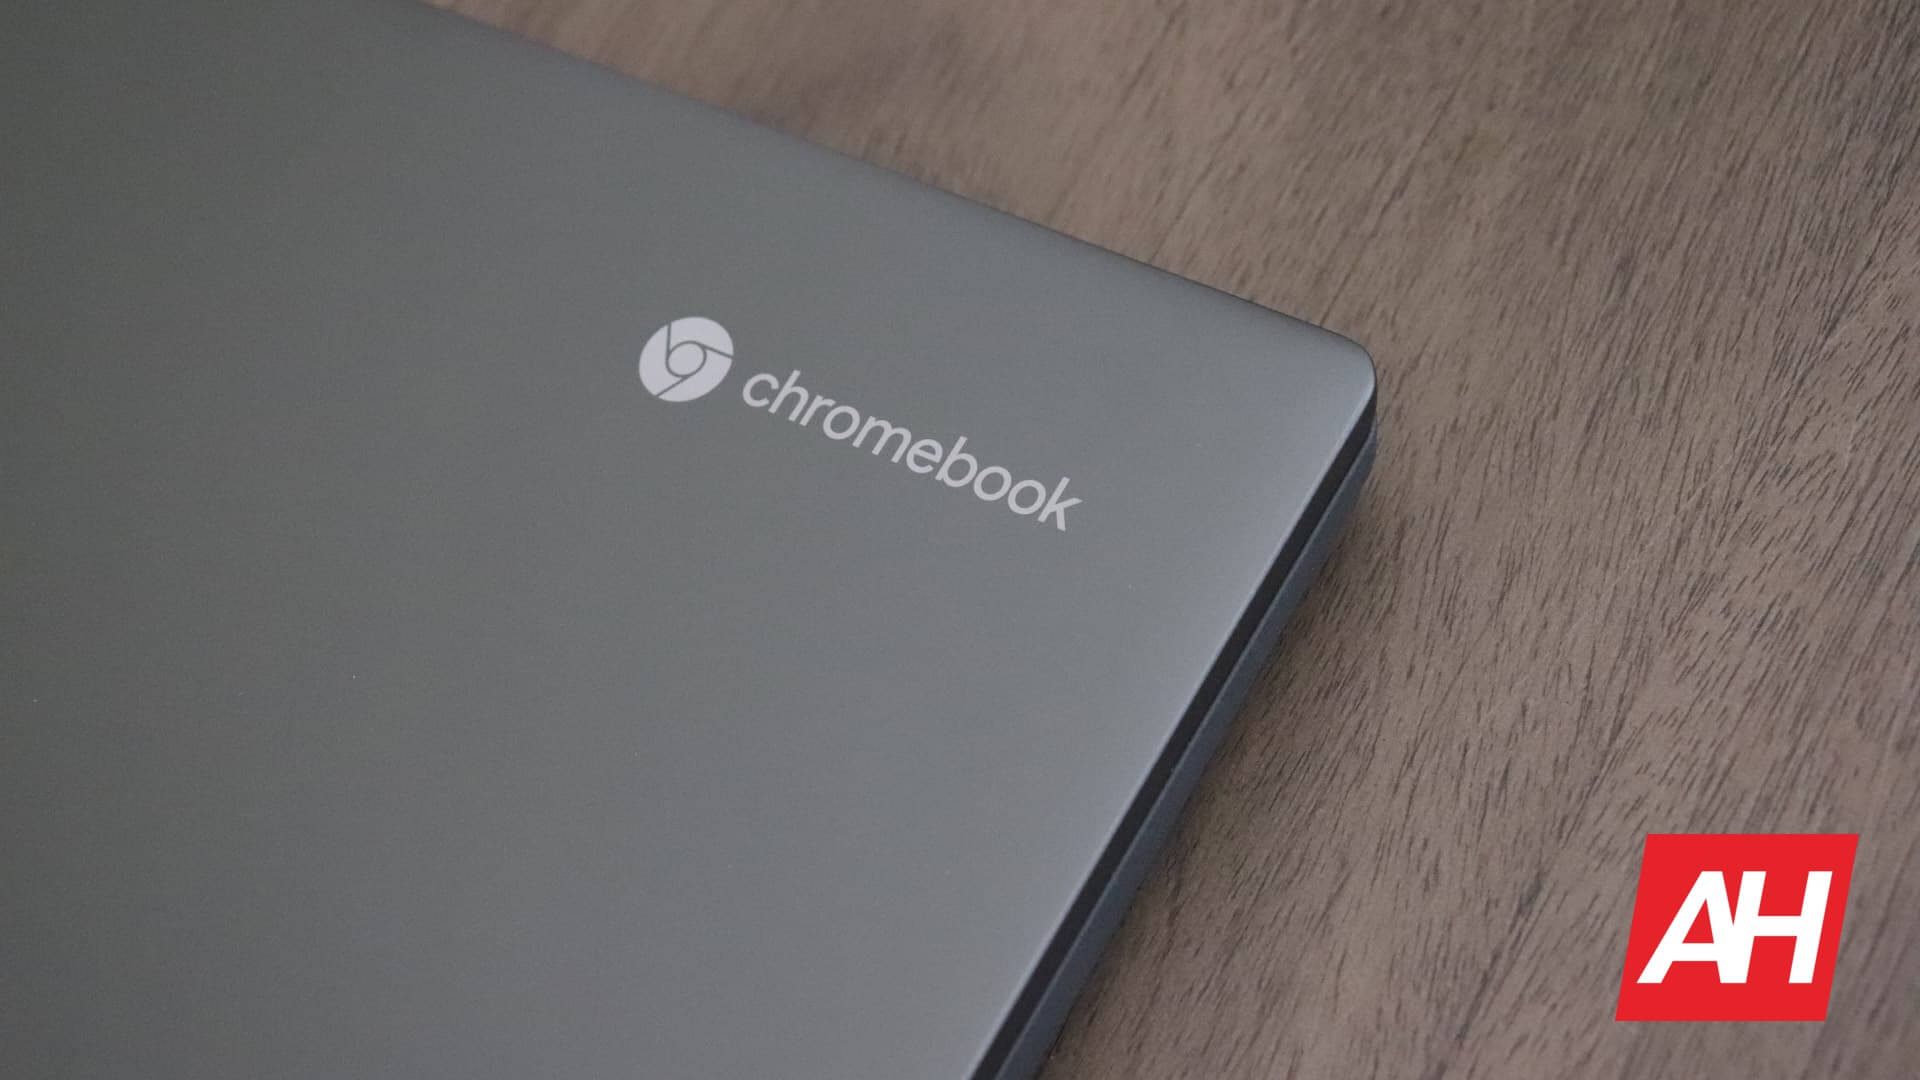 Работа из дома убивает настольные компьютеры и способствует росту Chromebook в 2020 году